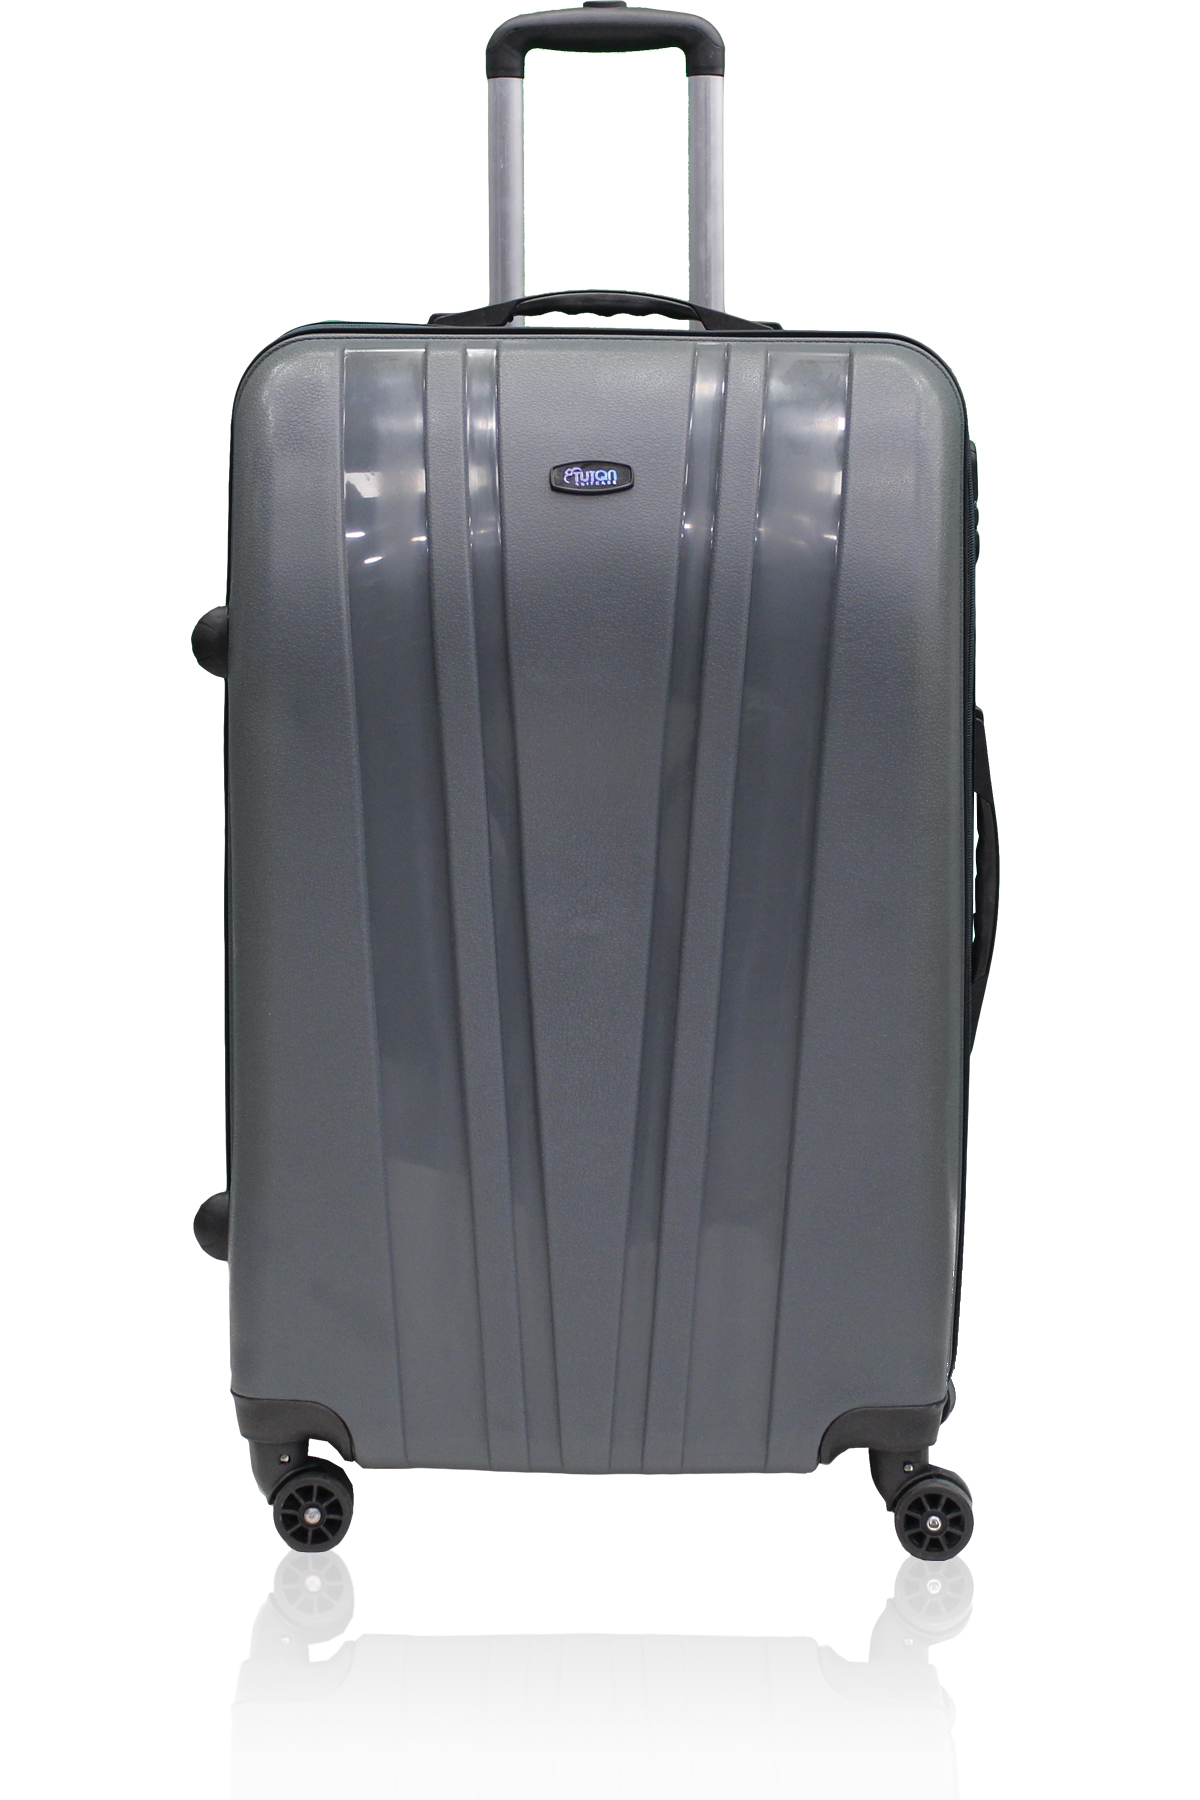 TUTQN Orta Boy Dayanıklı Kırılmaz Unisex Valiz&Bavul